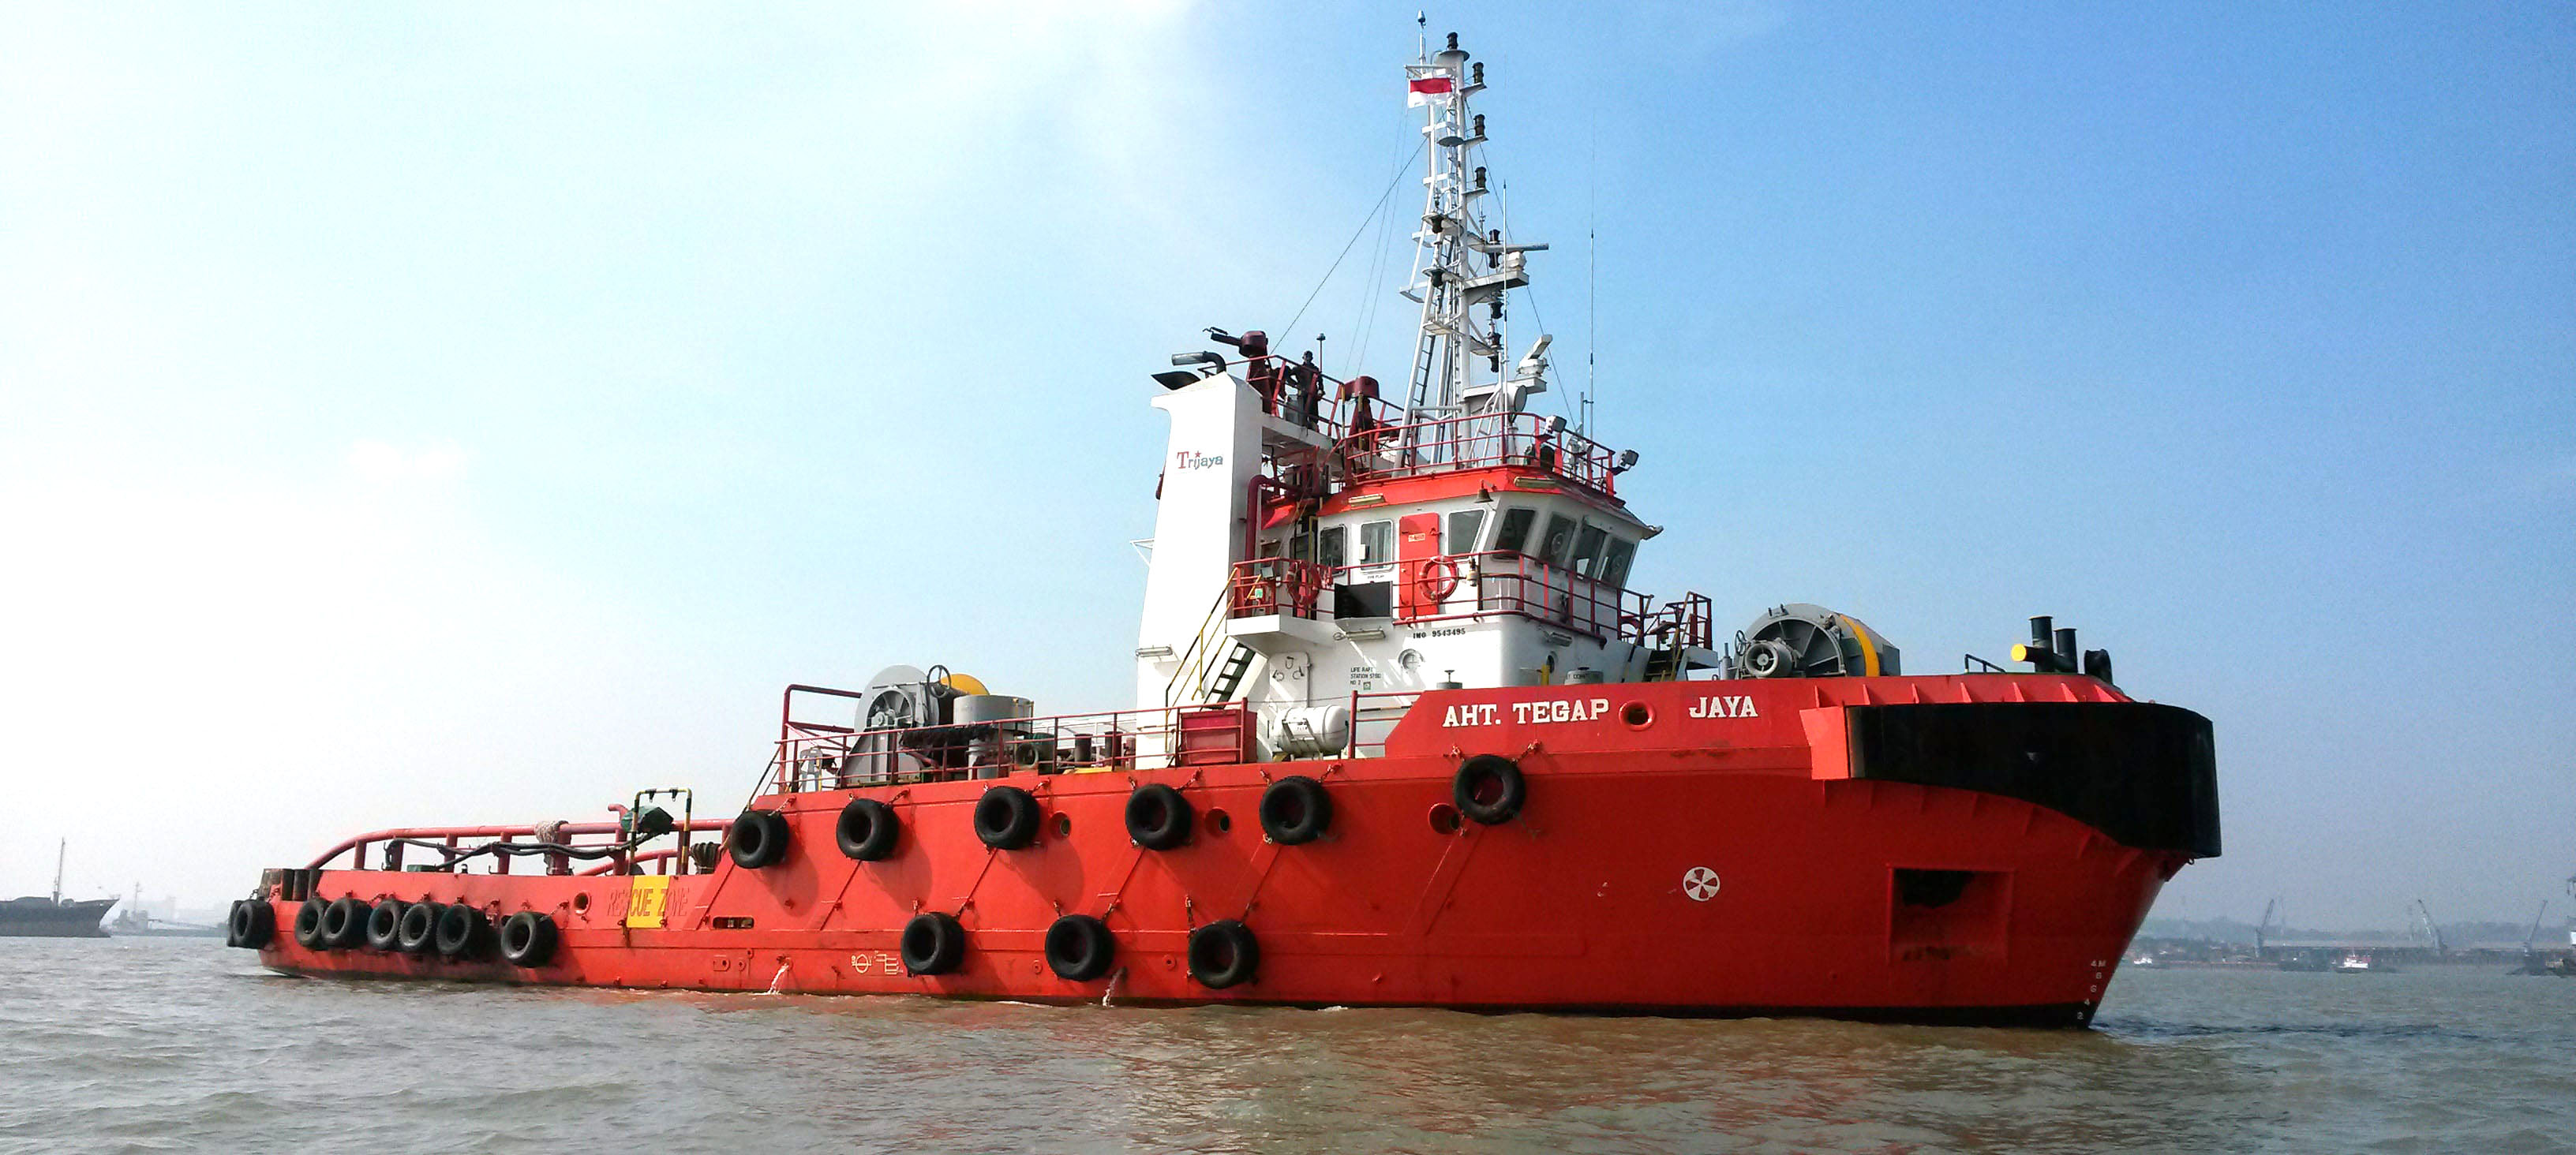 Trijaya Offshore Marine